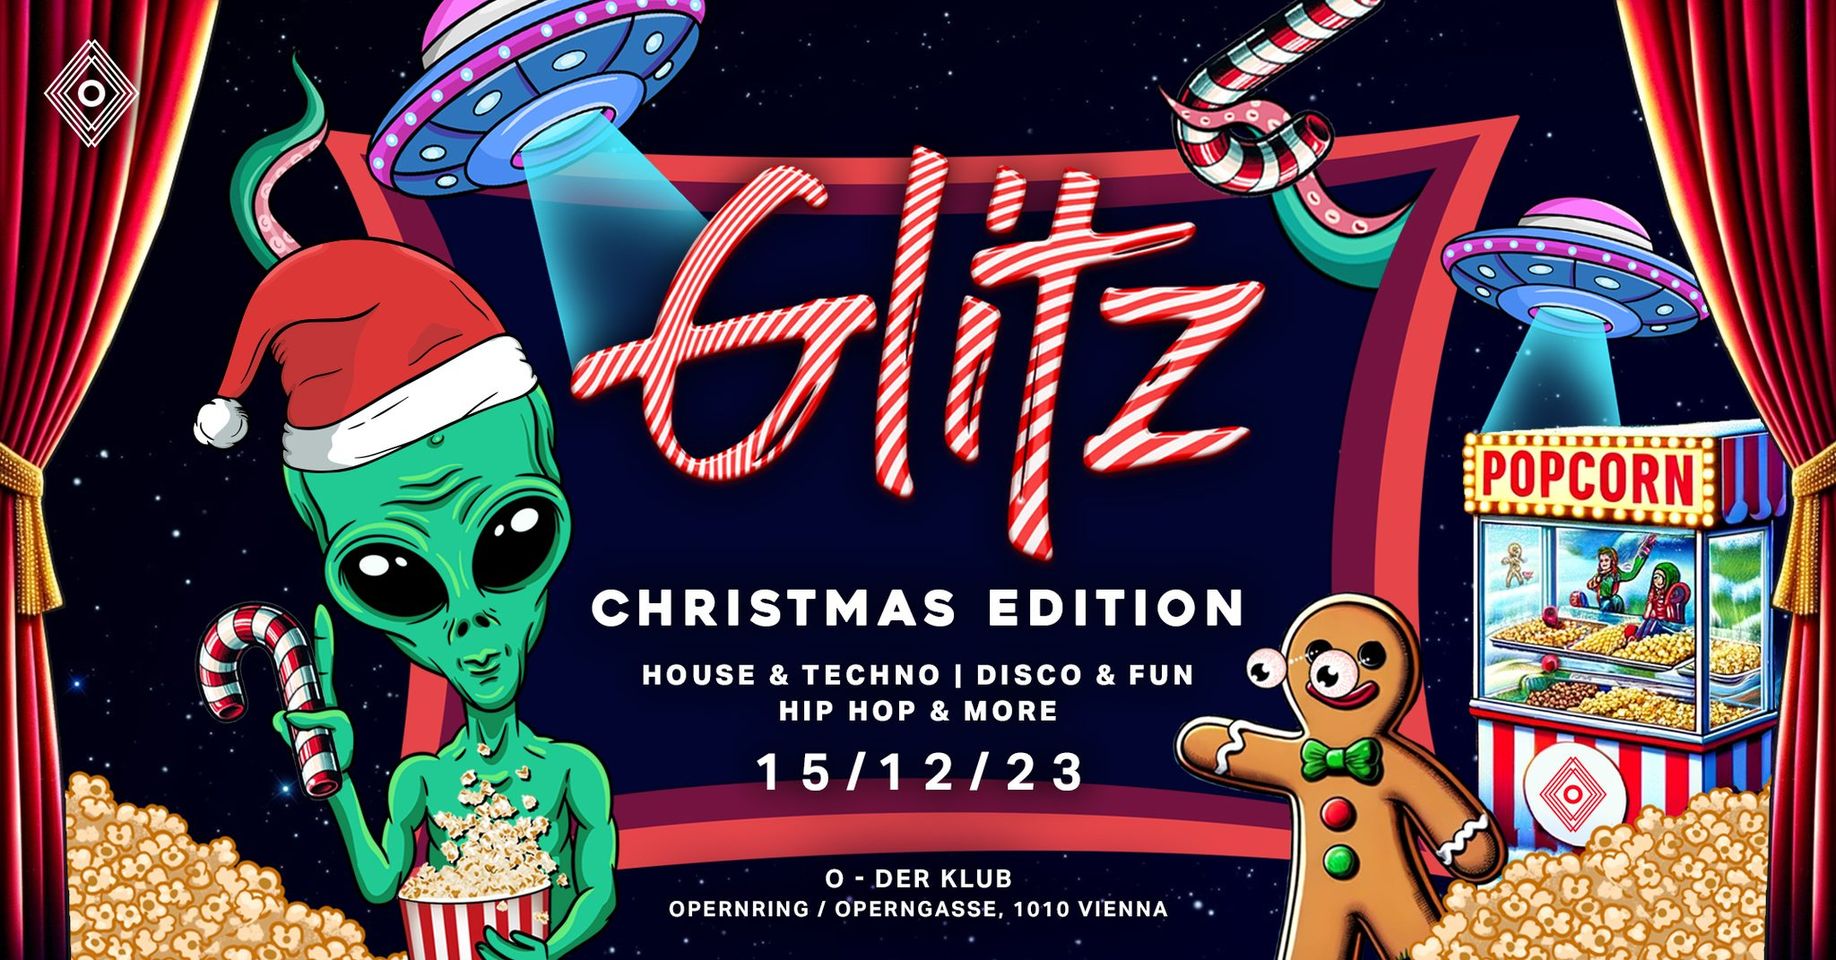 Glitz am 15. December 2023 @ O - Der Klub.